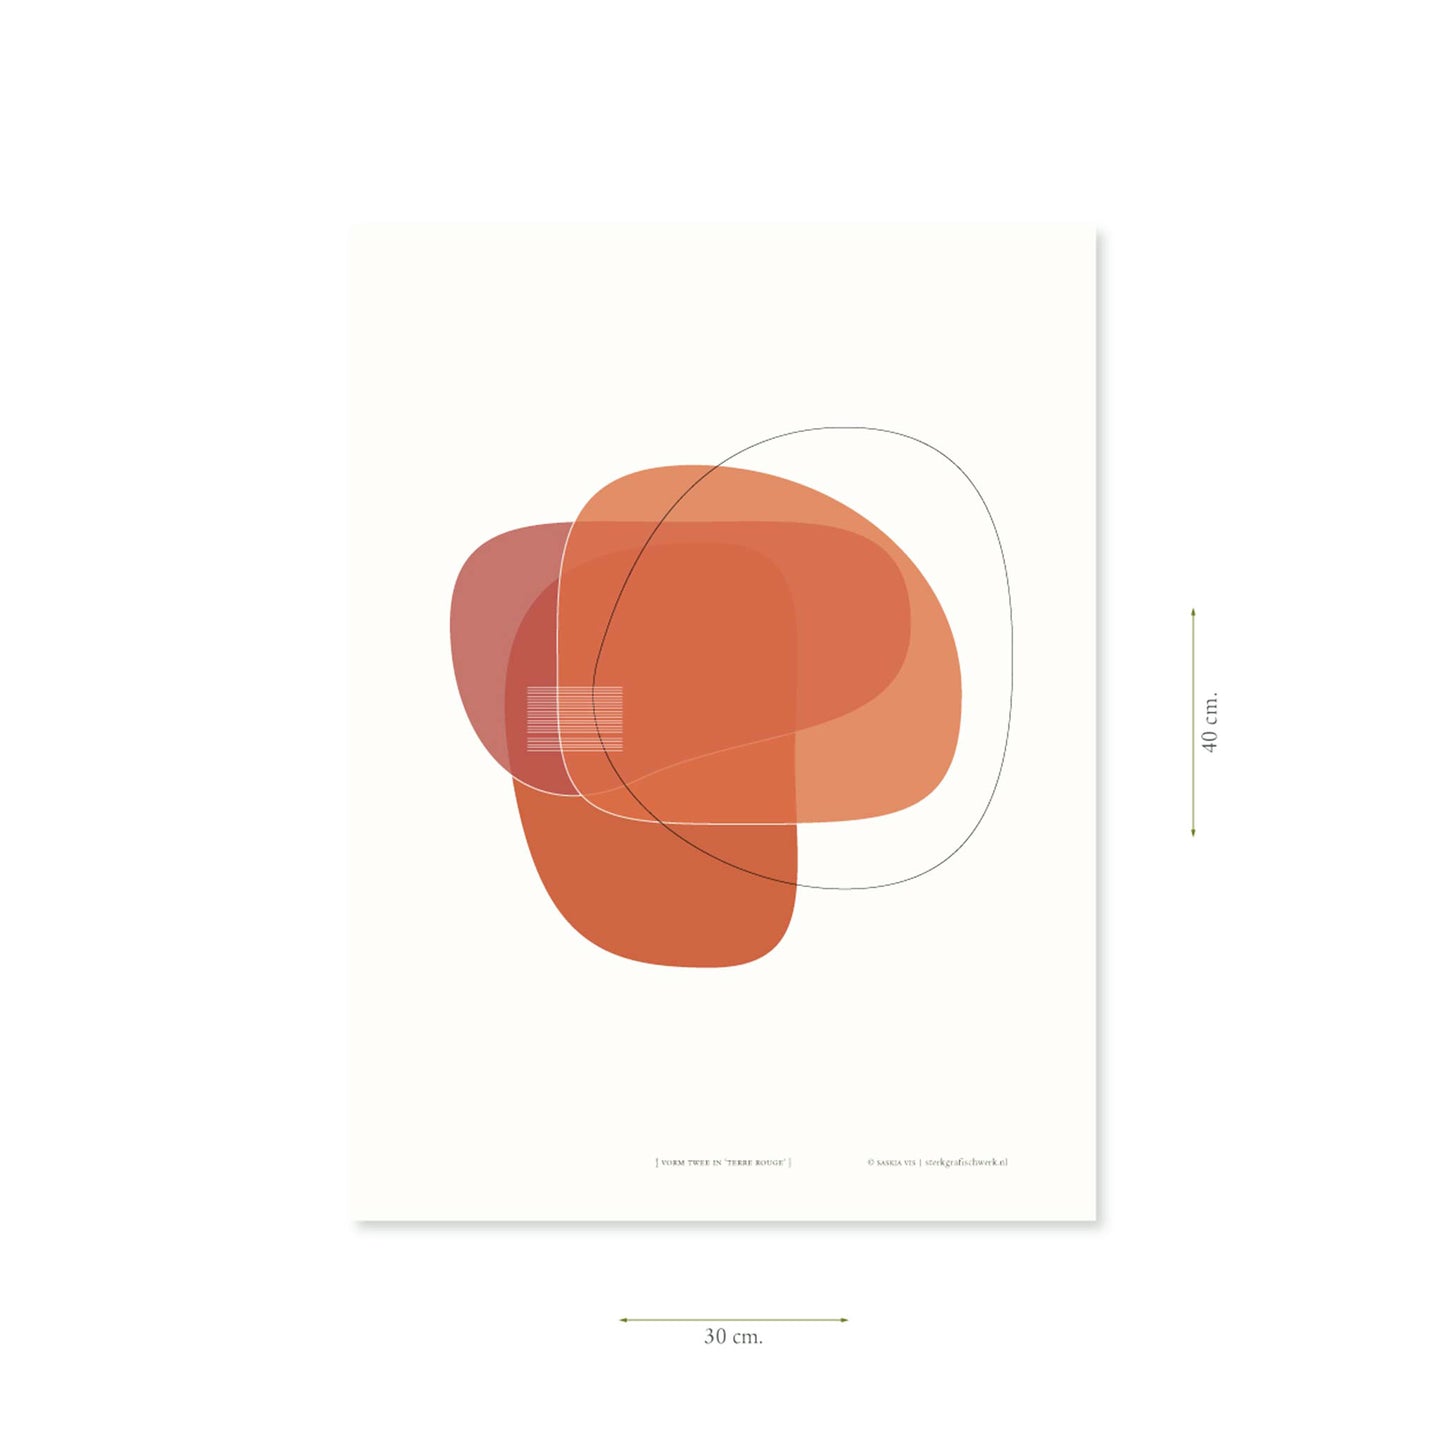 Productafbeelding, poster "vorm twee in terre rouge", met aanduiding van het formaat erop weergegeven 30 x 40 cm